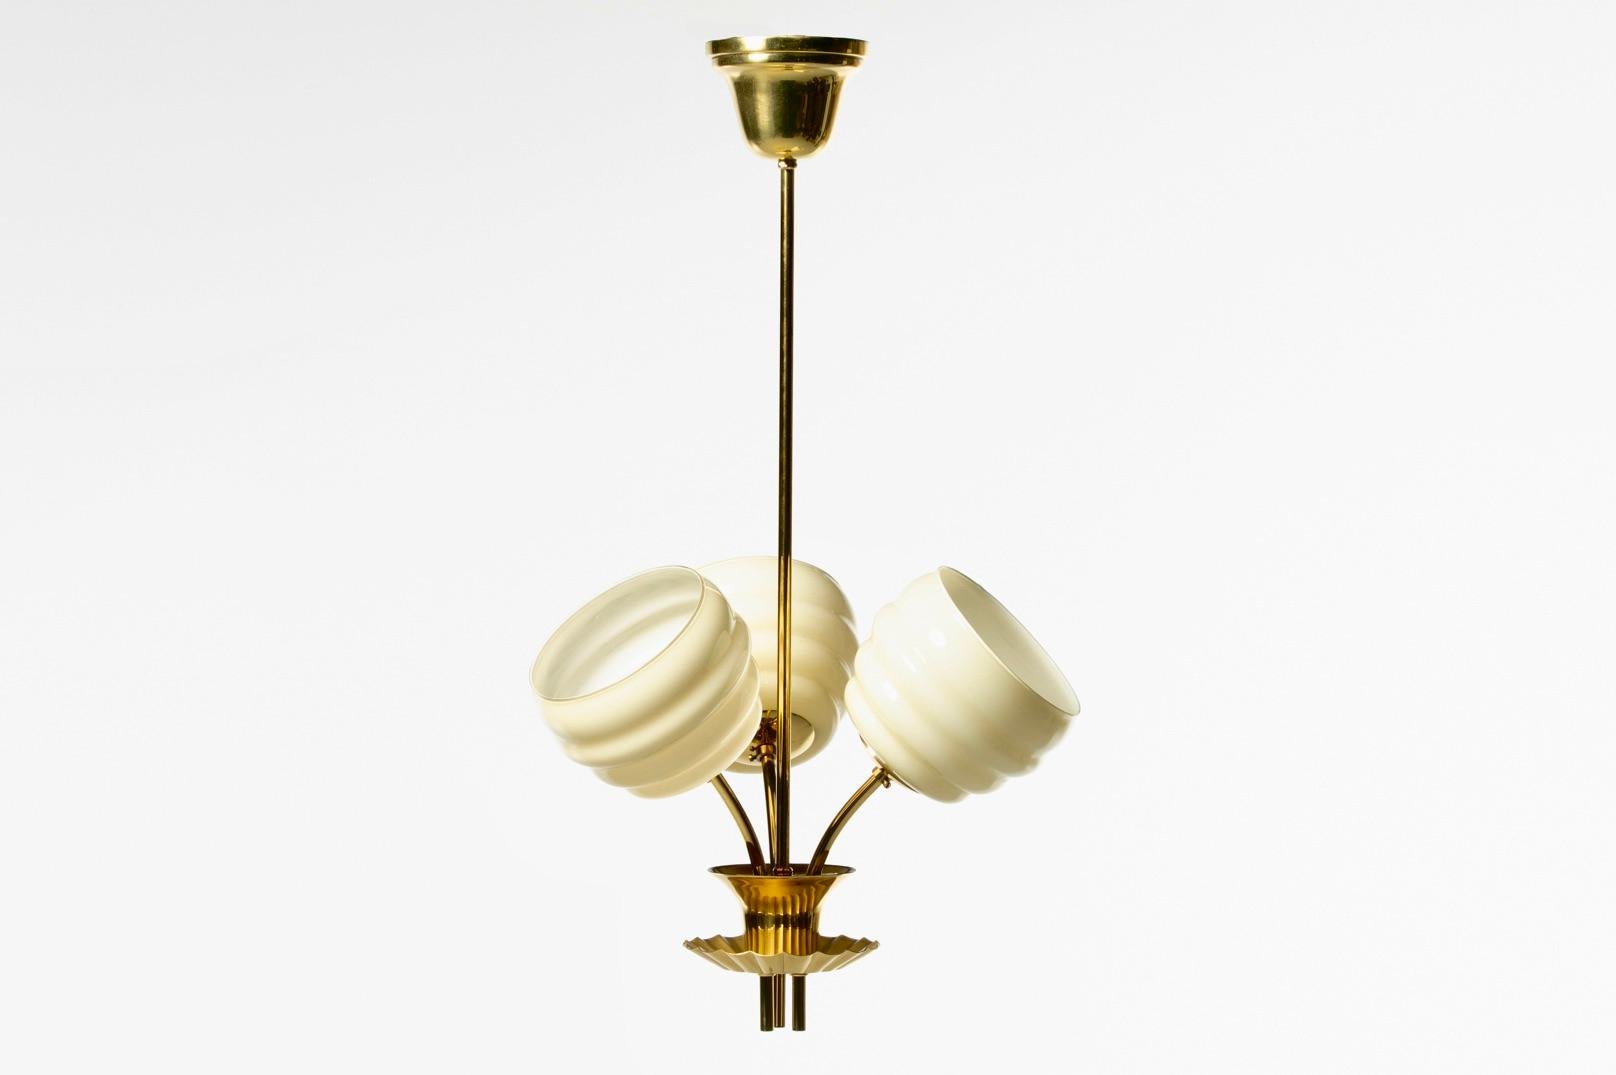 Originaire du Danemark et datant des années 1930, cette suspension Art Déco à trois lampes en laiton et verre de style Paavo Tynell est très glamour. Beau et unique, ce pendentif comporte trois diffuseurs en verre cannelé qui rappellent de petites